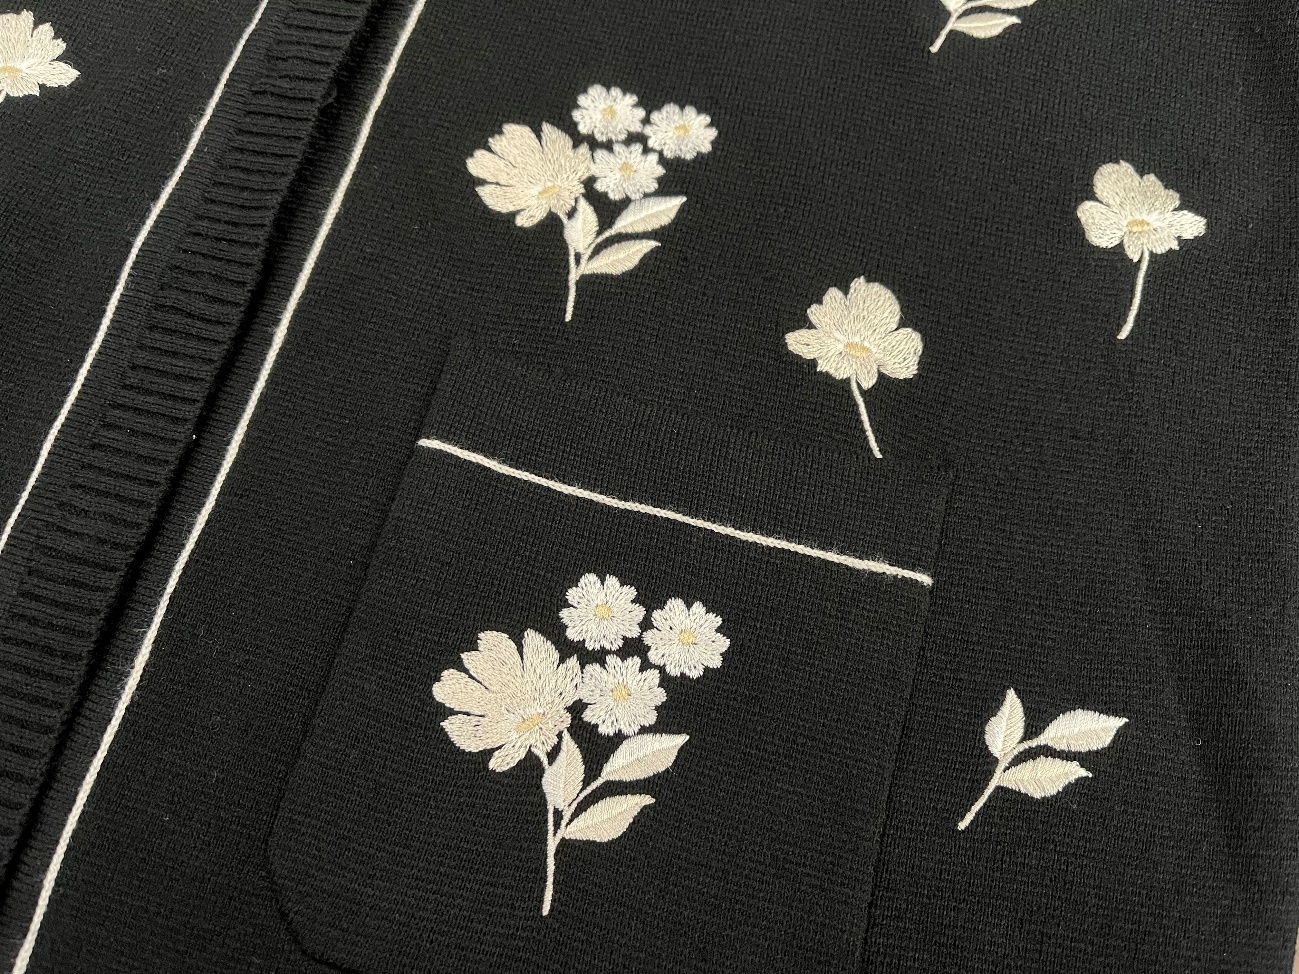 フラワー刺繍ニットアンサンブルワンピースのカラーバリエーションはCharcoal Gray／Blackの2色展開